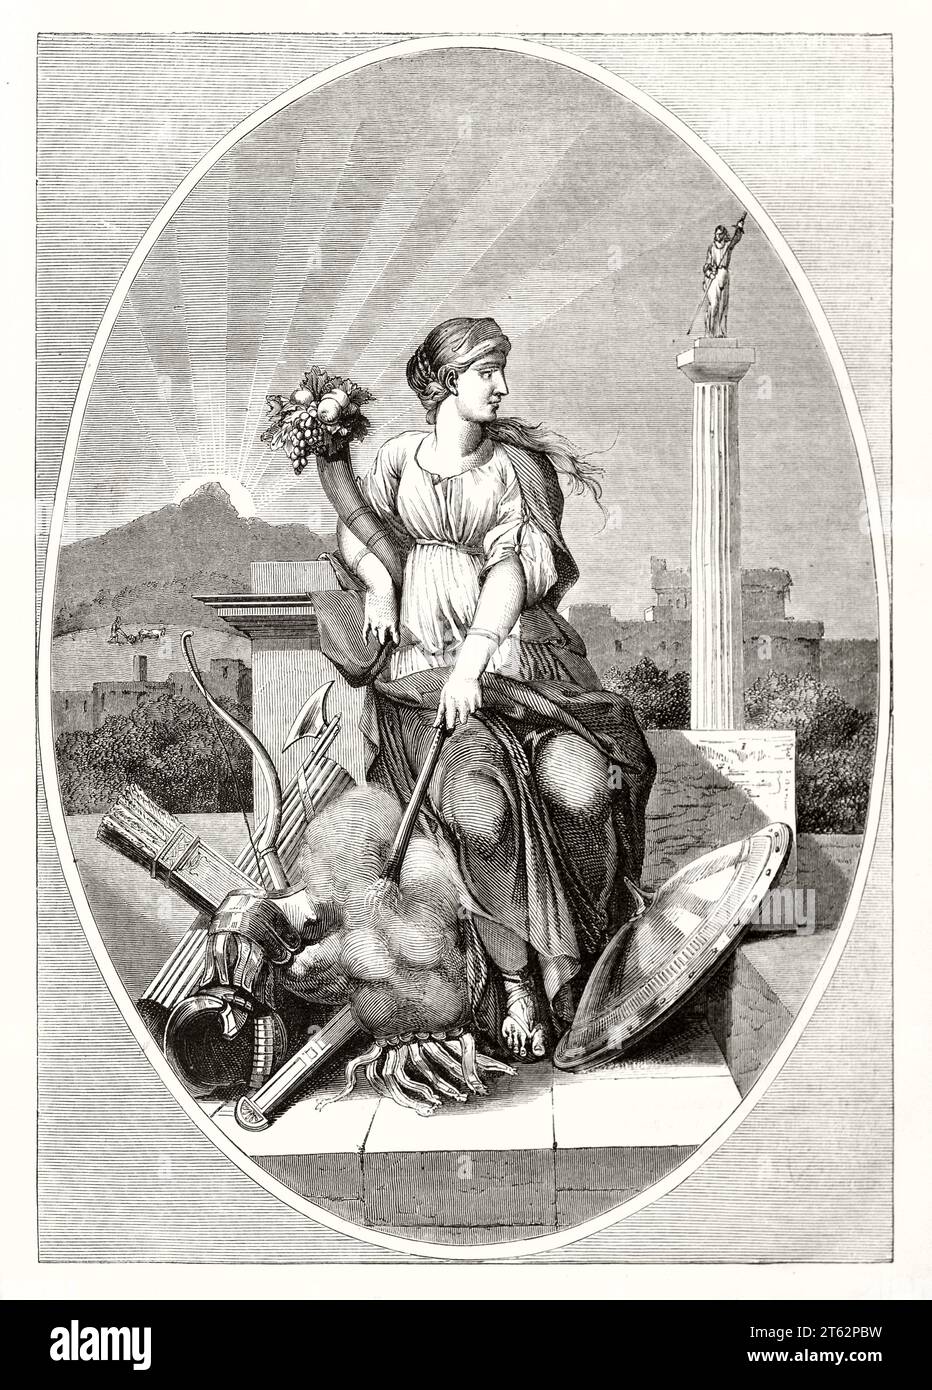 Vieille illustration allégorique de la sécurité. Par Bourdon, publ. Sur magasin pittoresque, Paris, 1849 Banque D'Images